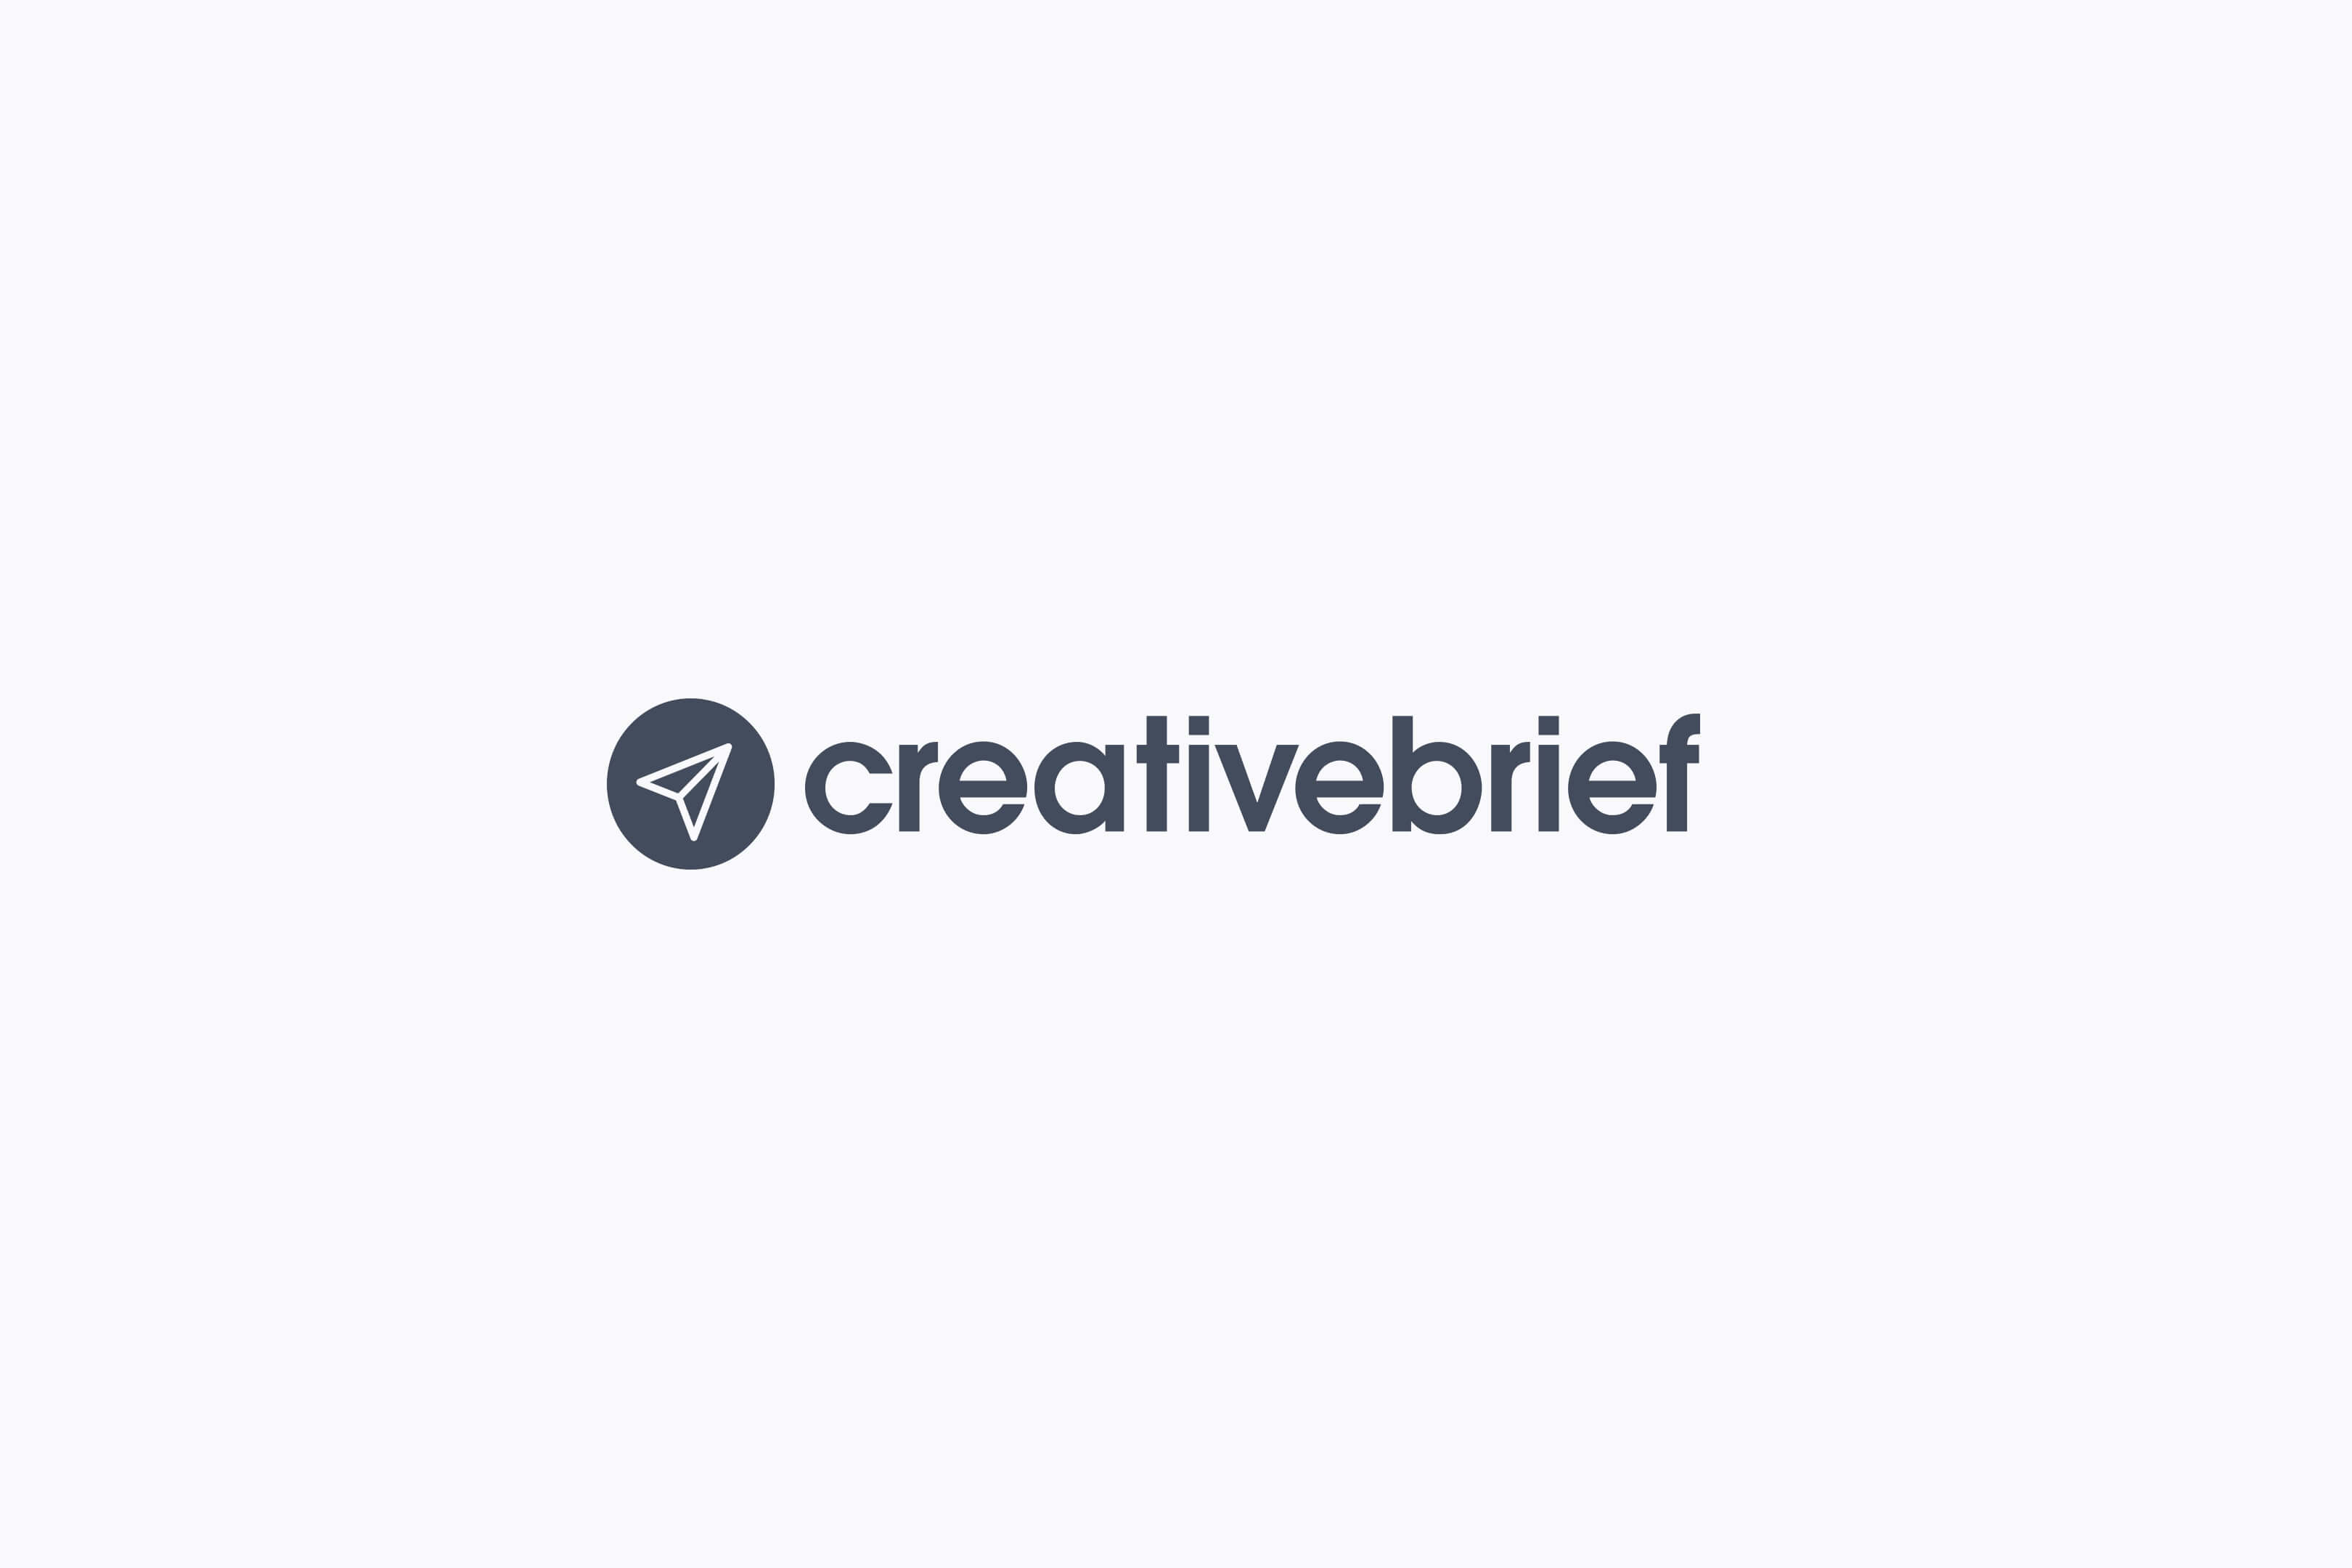 Creativebrief